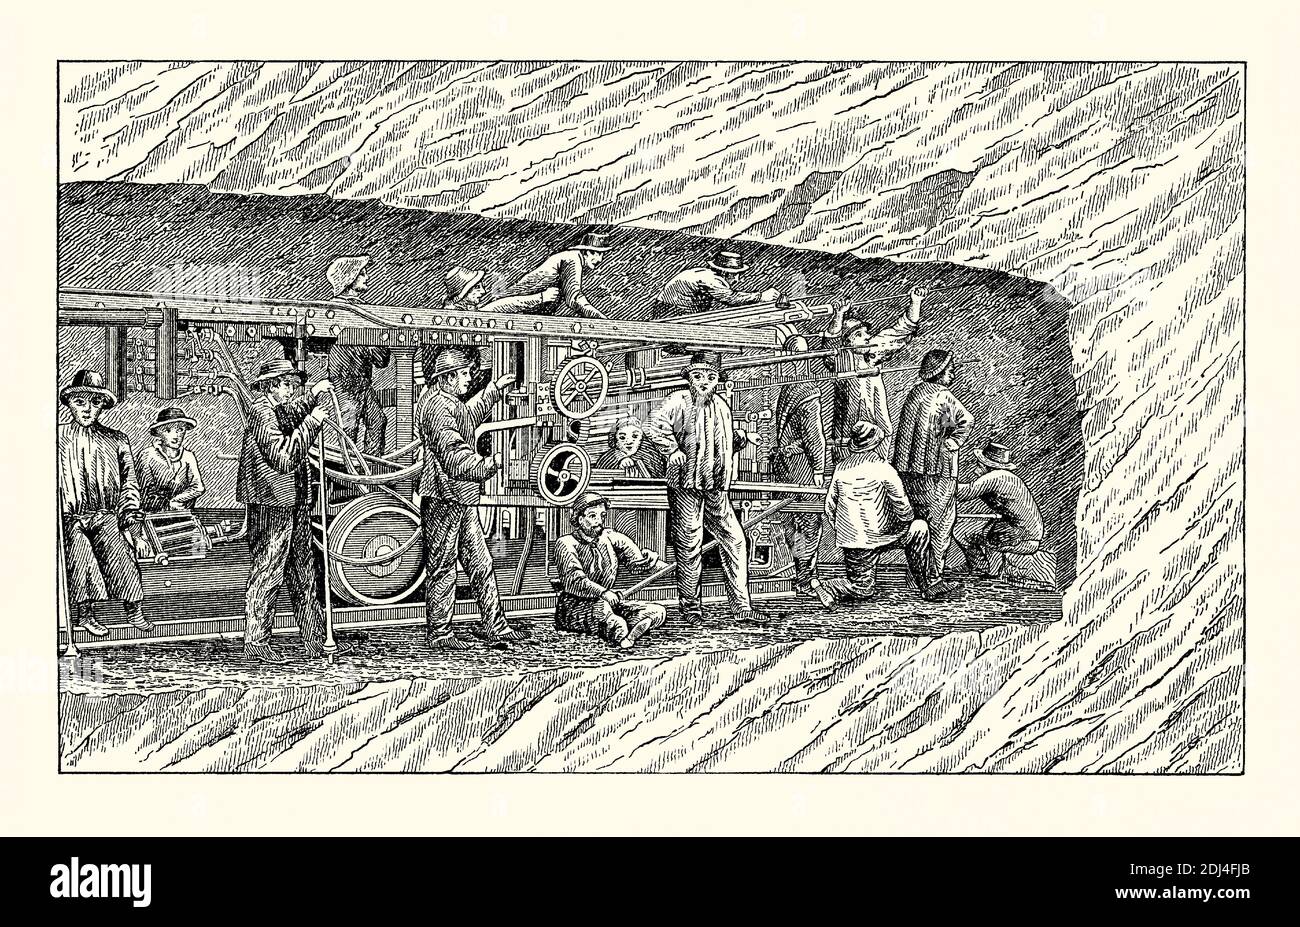 Eine alte Gravur von Männern beim Bau des Mount Cenis Tunnels oder Fréjus Rail Tunnel durch die Alpen zwischen Frankreich und Italien – der Tunnel zum Schienenverkehr wurde 1871 eröffnet. Es ist aus einem viktorianischen Buch der 1880er Jahre. Der Tunnel verbindet Rom und Paris über Turin und Chambéry. Der Bau unter der Leitung von Germain Sommeiller wurde in nur 14 Jahren mit technischen Innovationen wie pneumatischem Bohren und elektrischer Zündung von Sprengstoffen abgeschlossen – wie hier gezeigt, wo die Bohrer Bohrlöcher für den Nitro-Glycerin-Sprengstoff sind. Die Verwendung von Dynamit beschleunigte Fertigstellung. Stockfoto